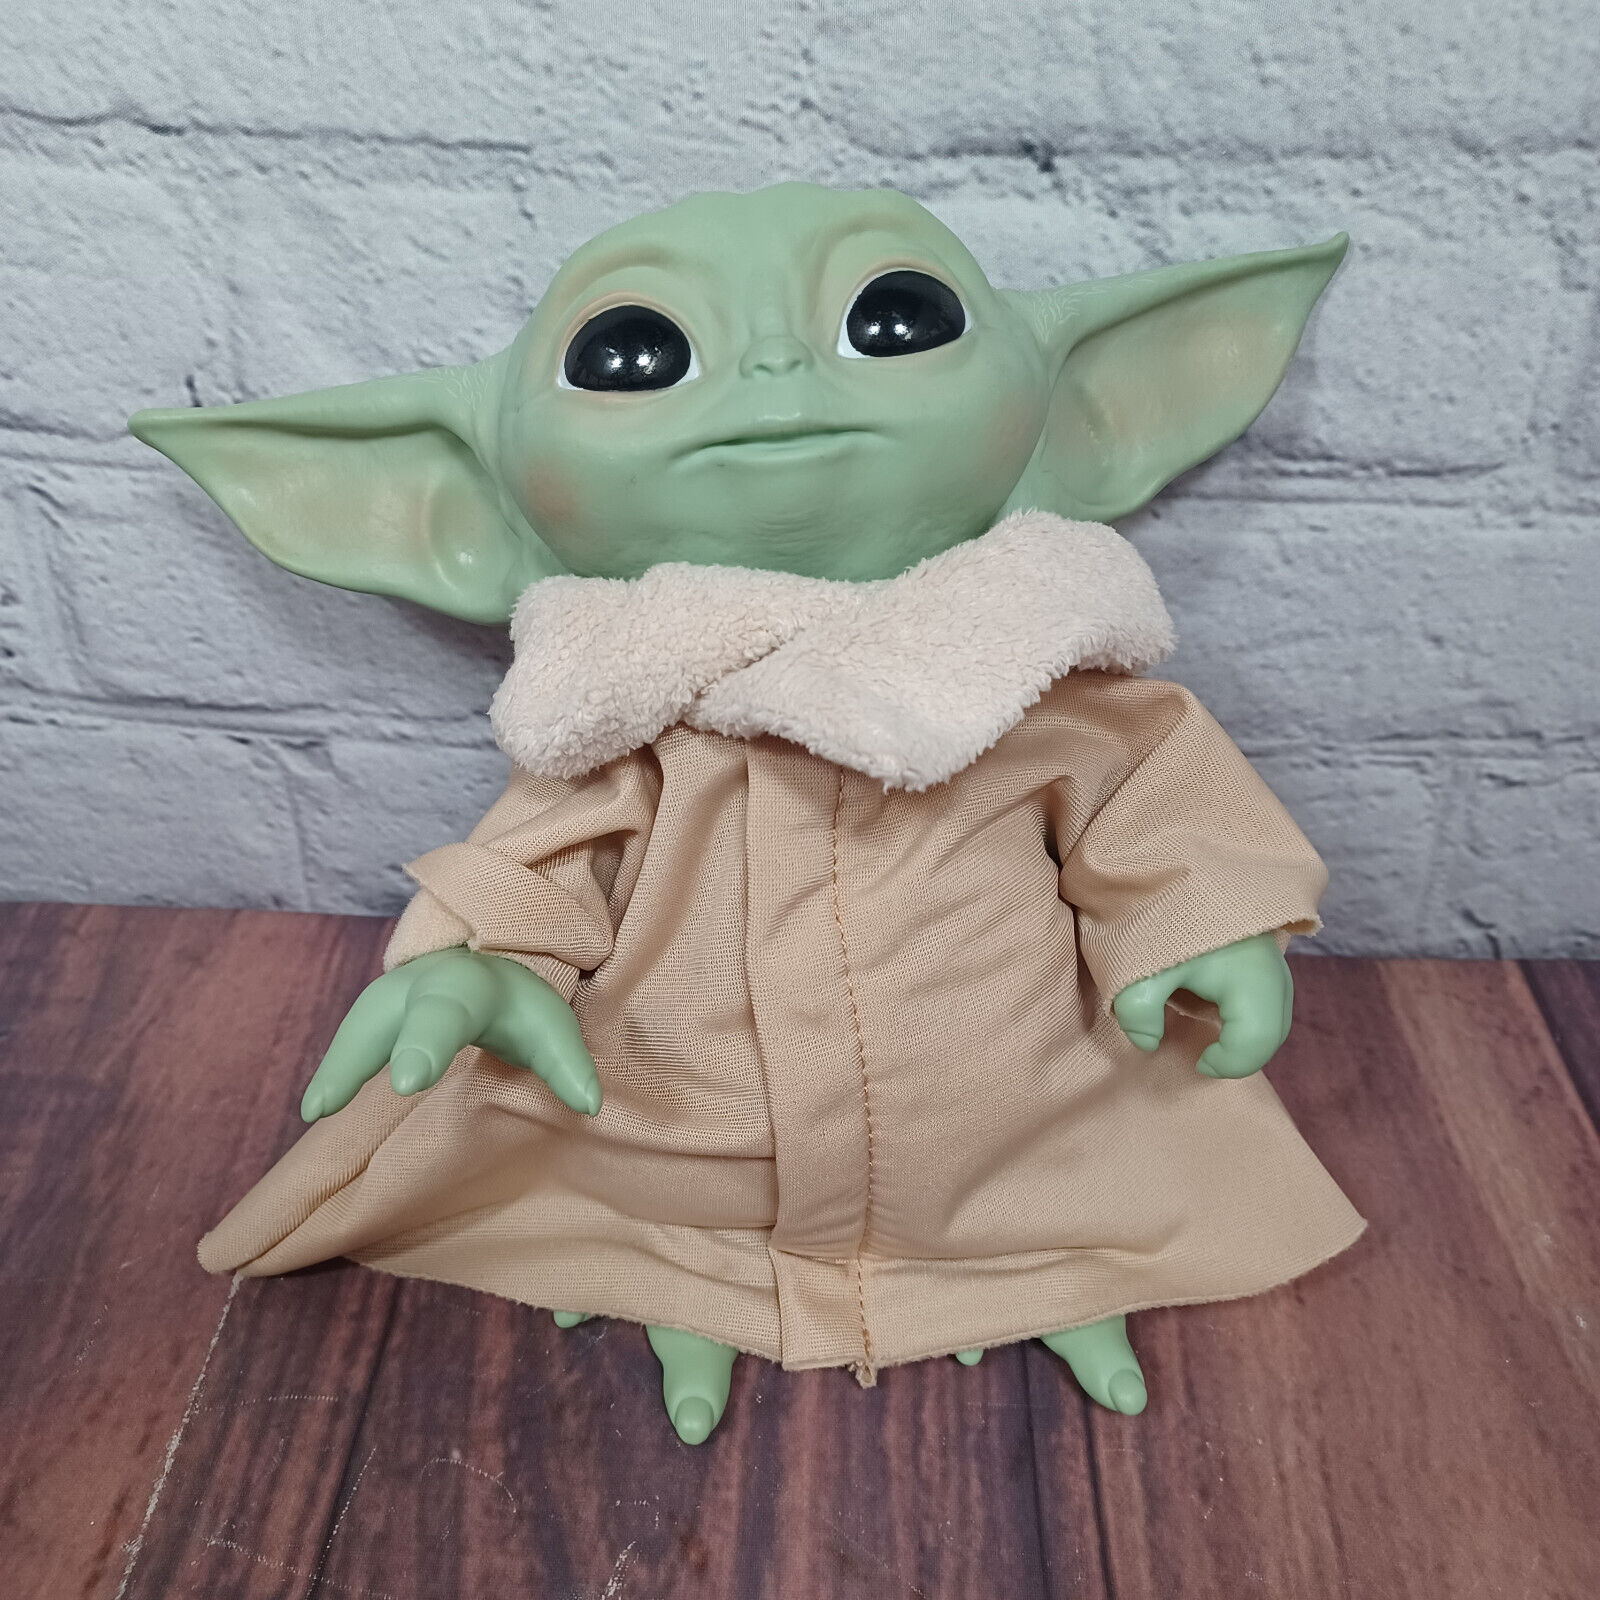 Hasbro Star Wars The Mandalorian Talking Grogu The Child Baby Yoda Plush 2020